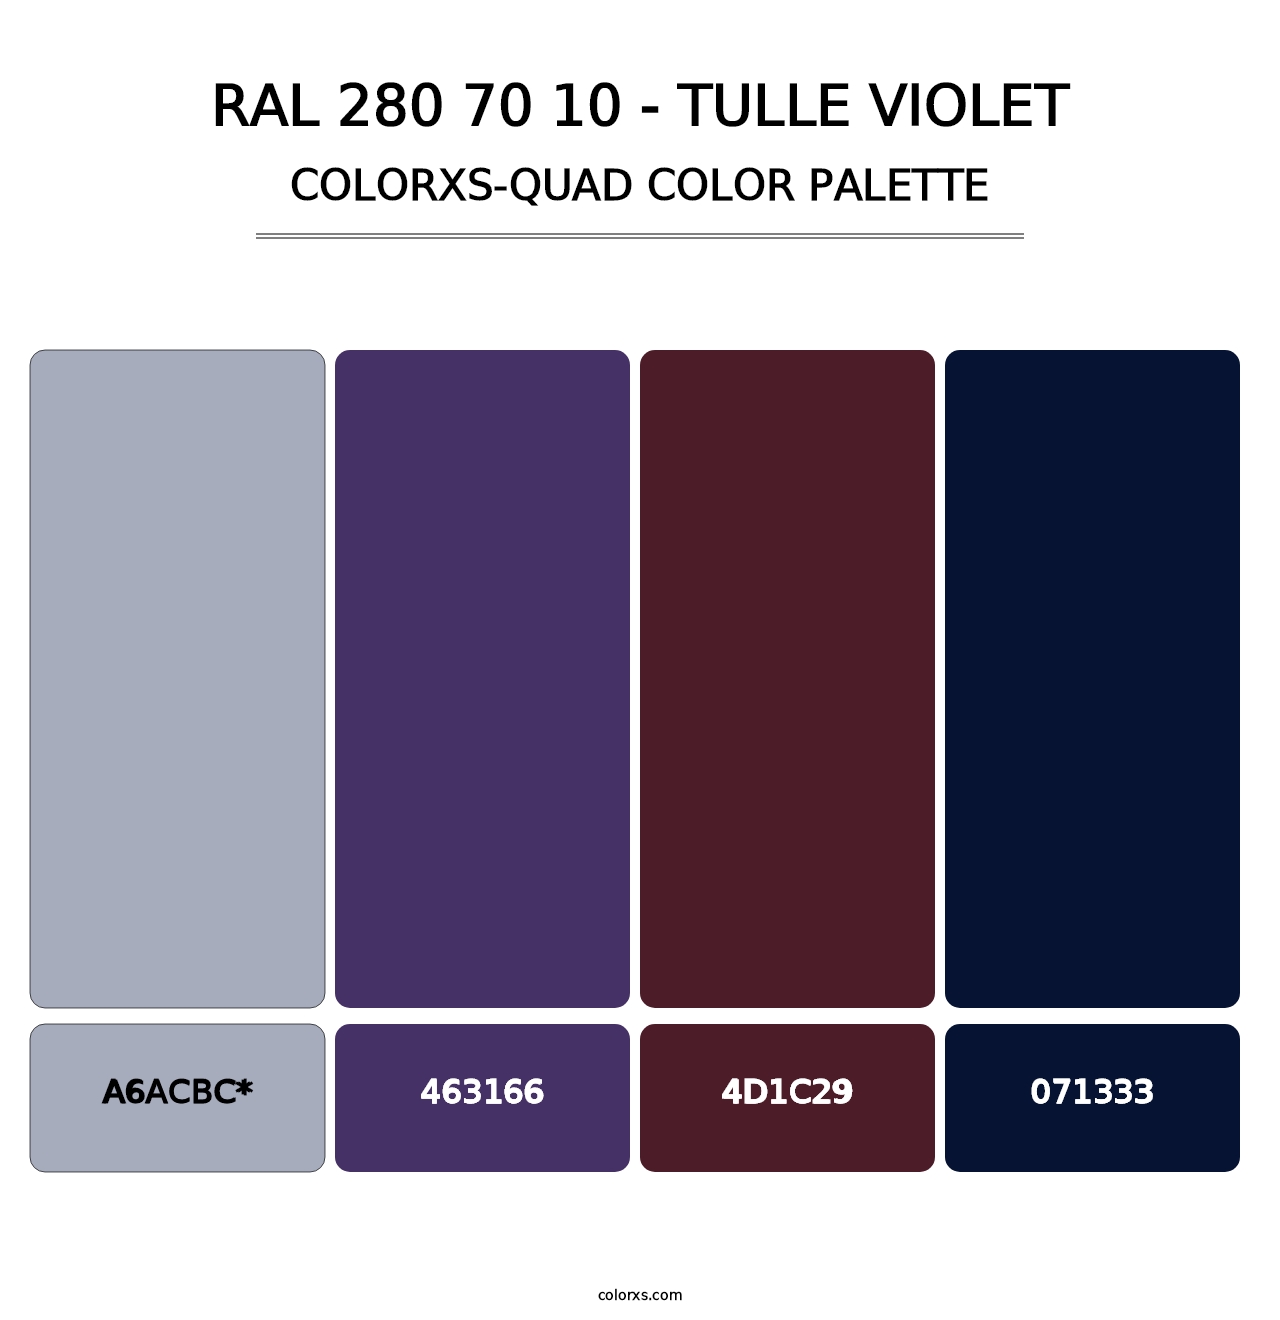 RAL 280 70 10 - Tulle Violet - Colorxs Quad Palette